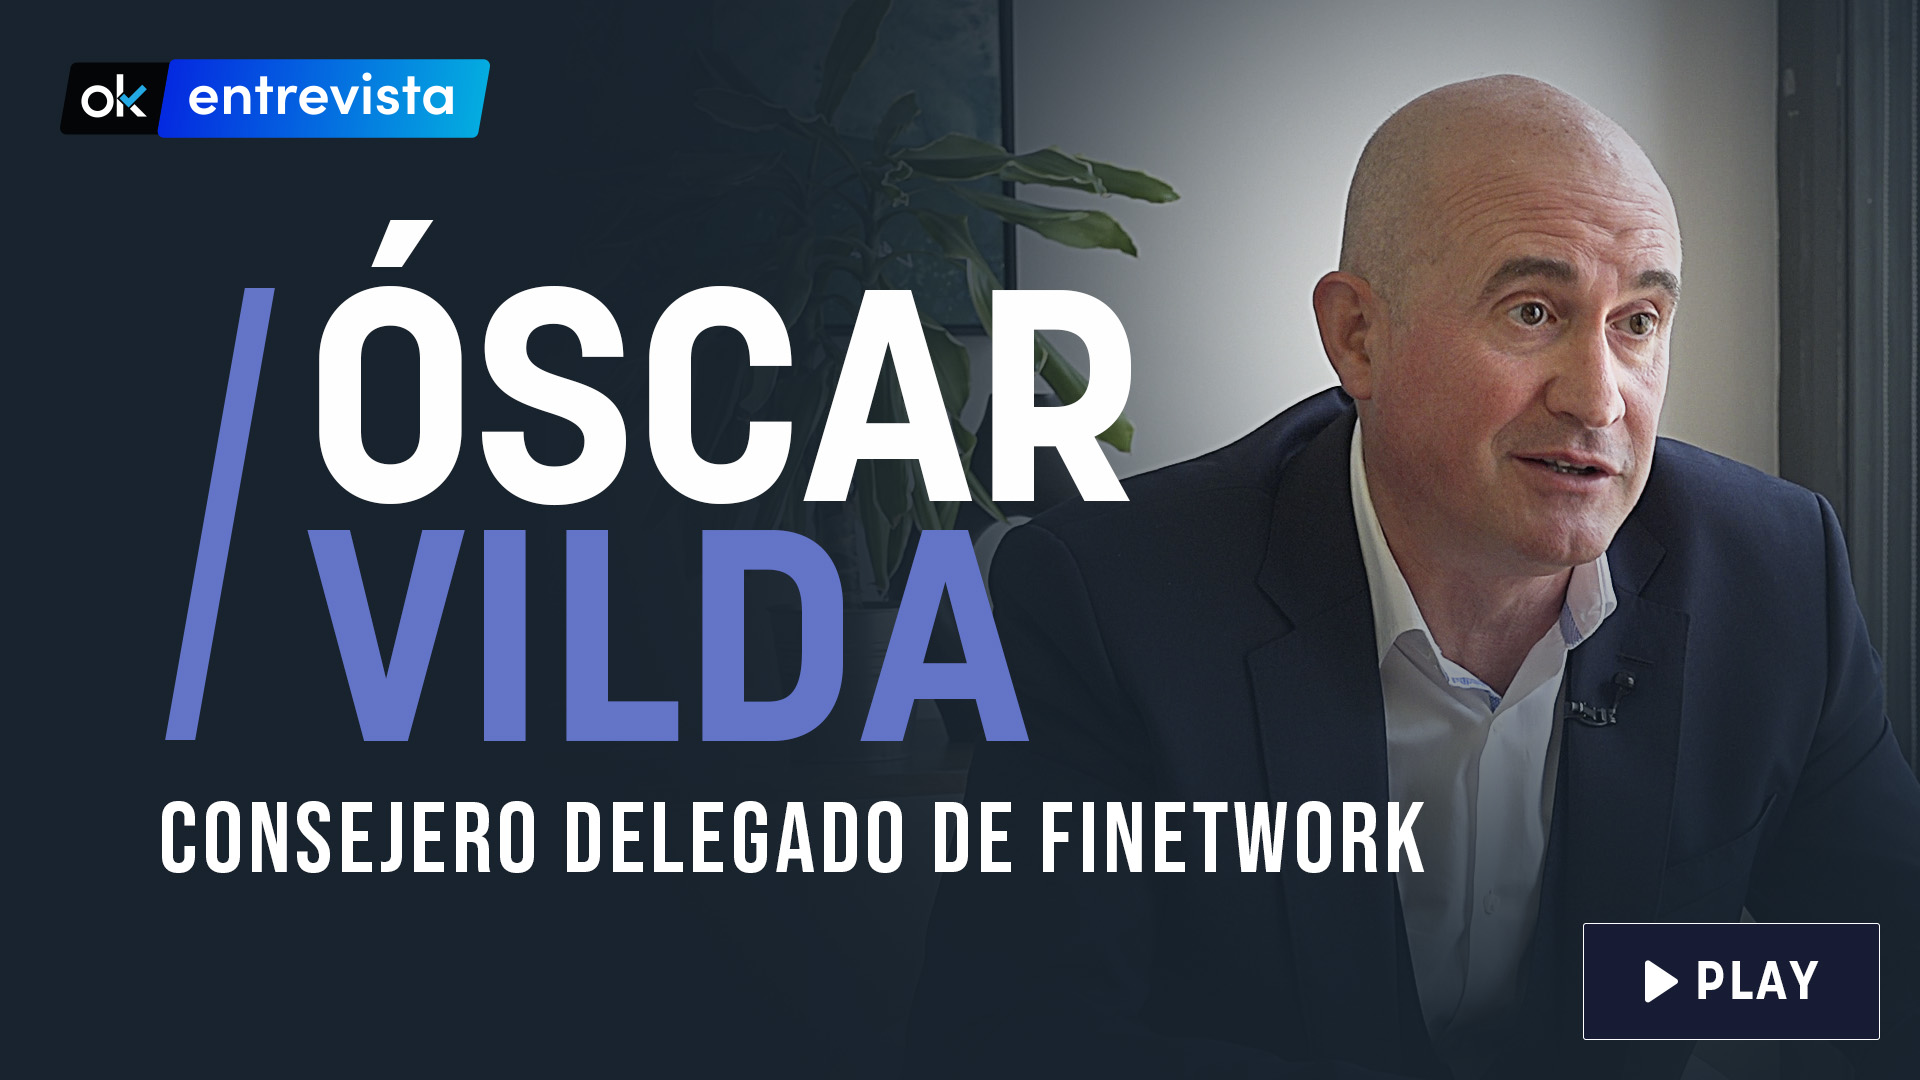 Óscar Vilda, nuevo consejero delegado de Finetwork